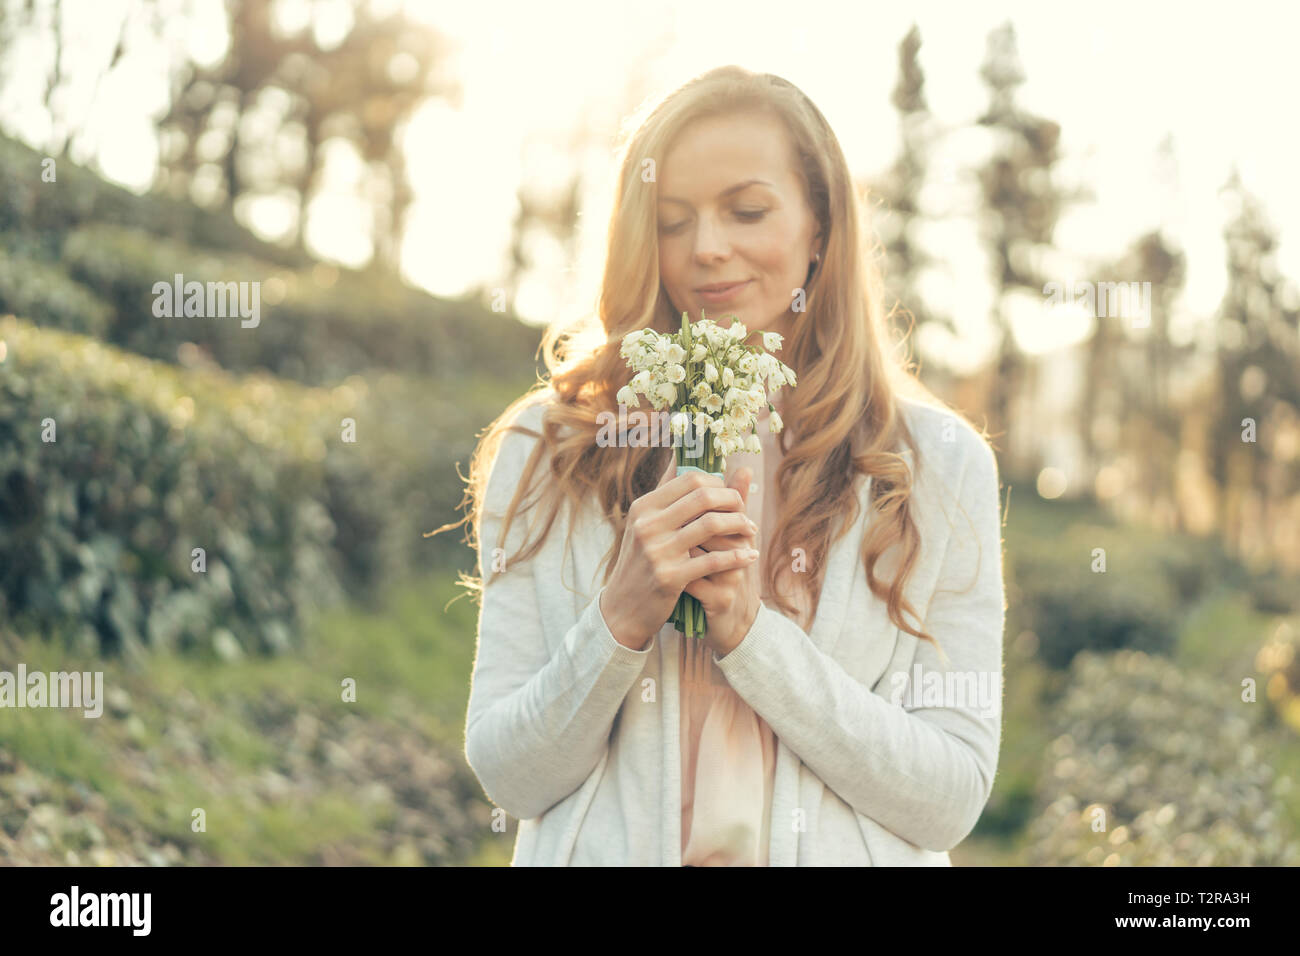 Donna felice con il rosso dei capelli lunghi e un bel sorriso ai raggi del sole tiene un bouquet di fiori delicati di fronte a lei e gode Foto Stock